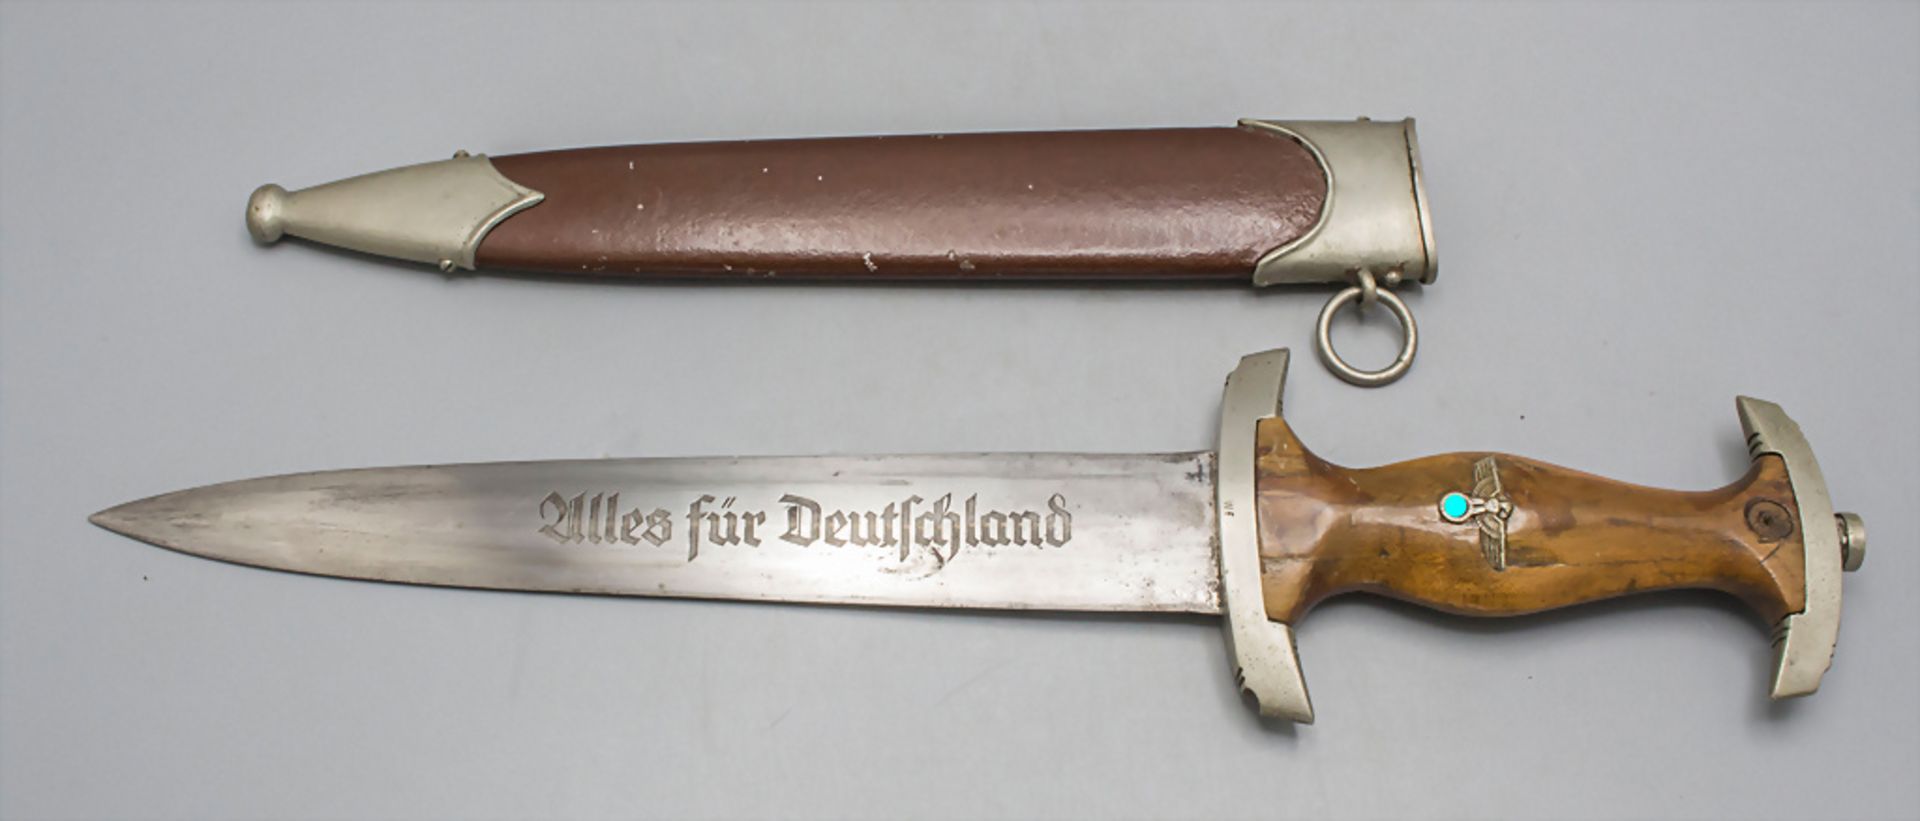 SA-Dolch Ex-Röhm / A SA dagger, Drittes Reich - Image 3 of 4